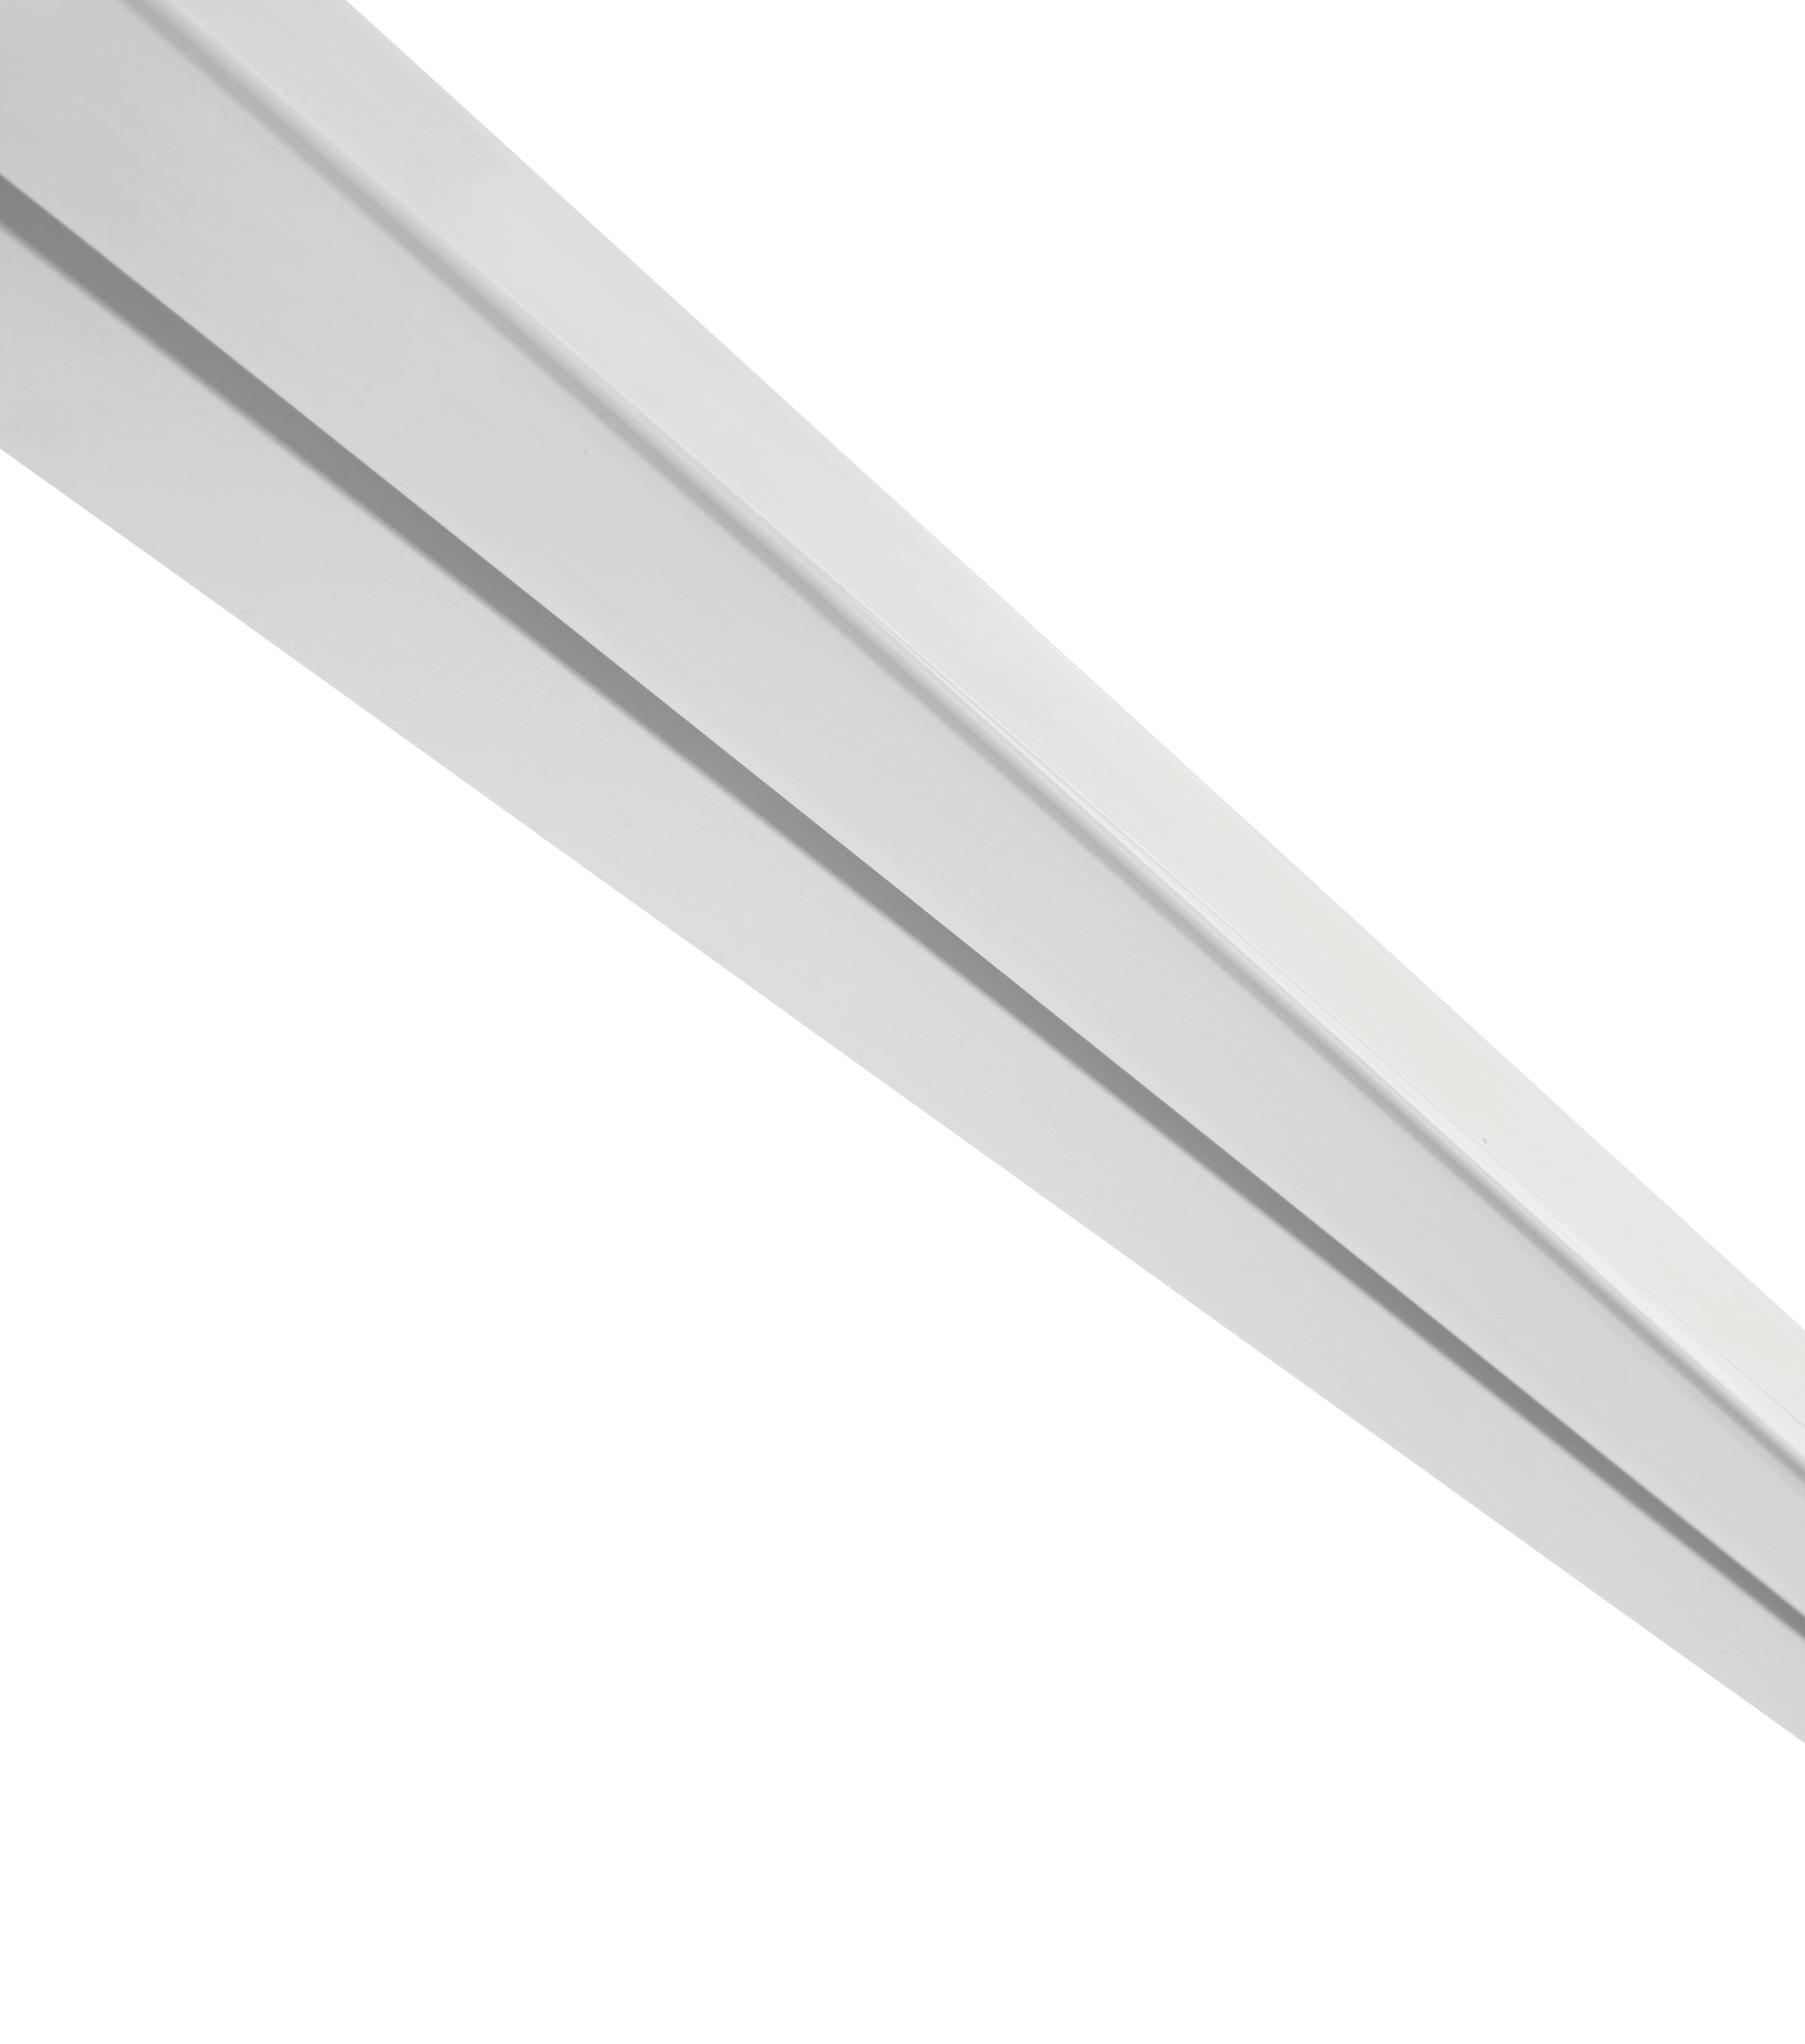 Vorhangschiene Amelie in Weiß ca. 120cm - Weiß, Kunststoff (120/4,8/1,7cm) - Modern Living